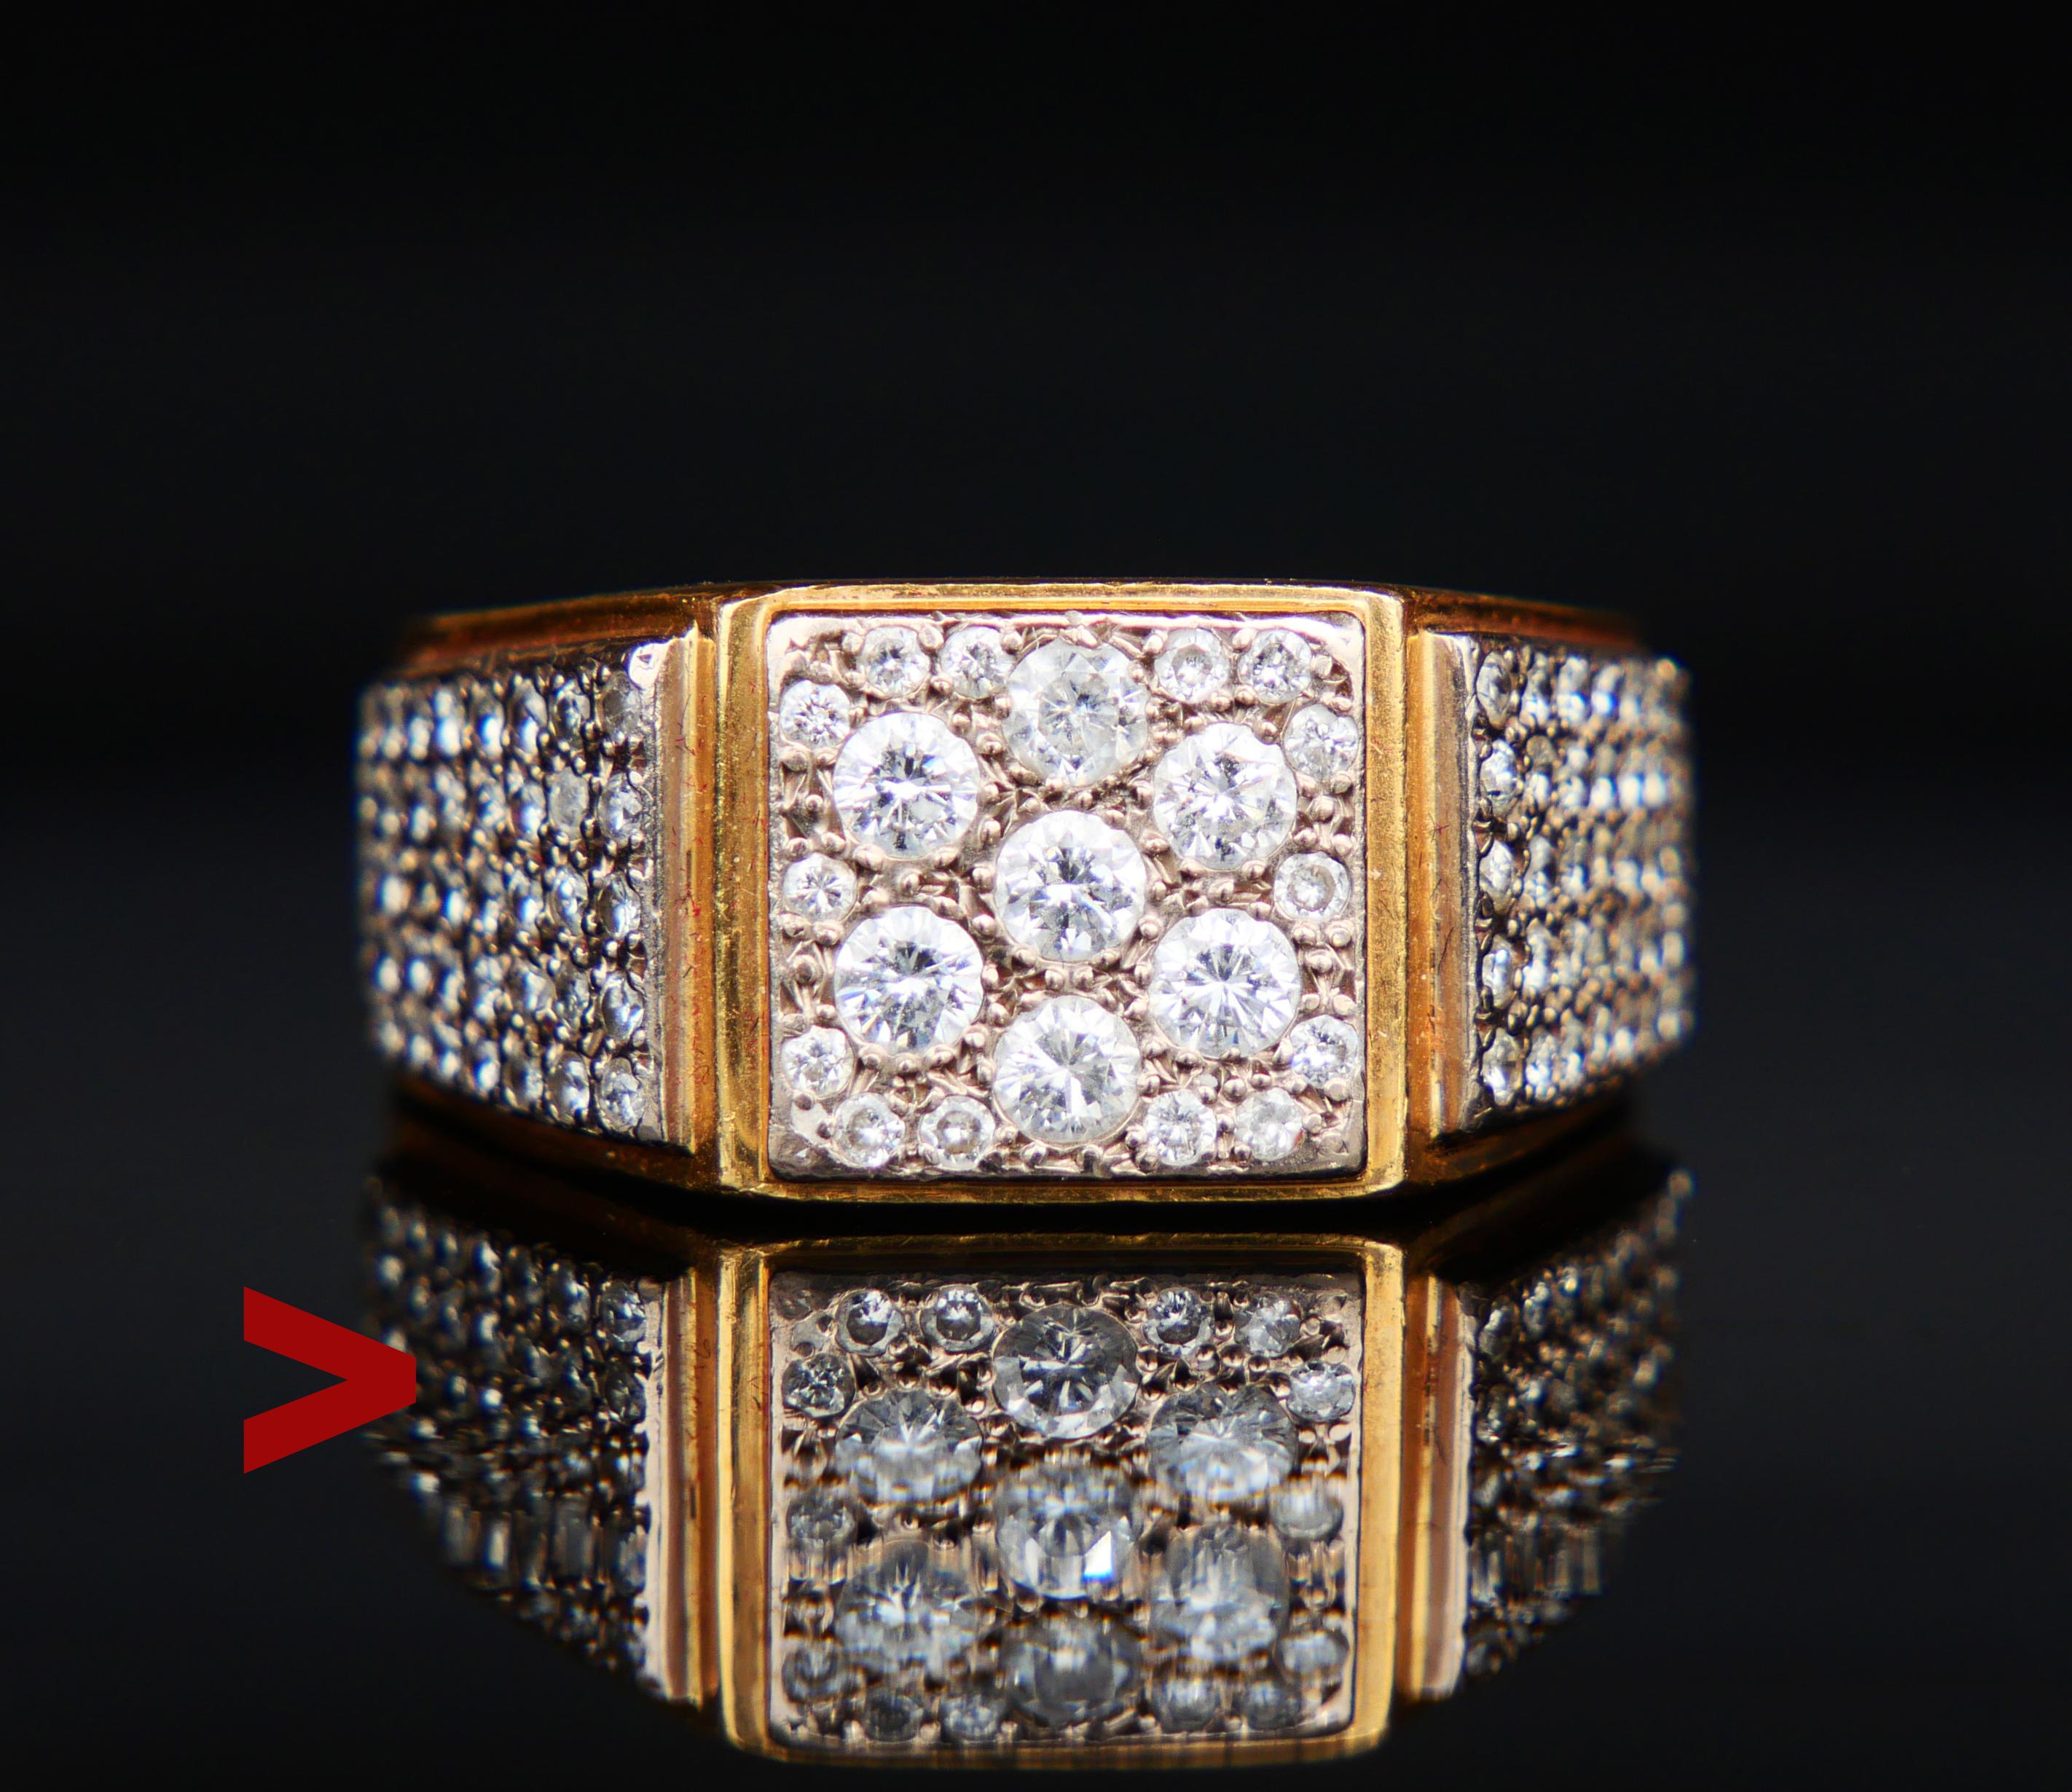 Luxuriöser und massiver antiker oder Vintage Herrenring aus massivem 18K Gelbgold mit 101 Diamanten im Brillantschliff, die in Platin / oder Weißgold-Cluster gefasst sind.

Sieben größere Diamanten (Ø 3 mm / 0,11 ct); 94 Diamanten (ca. 1,3 mm/0,01